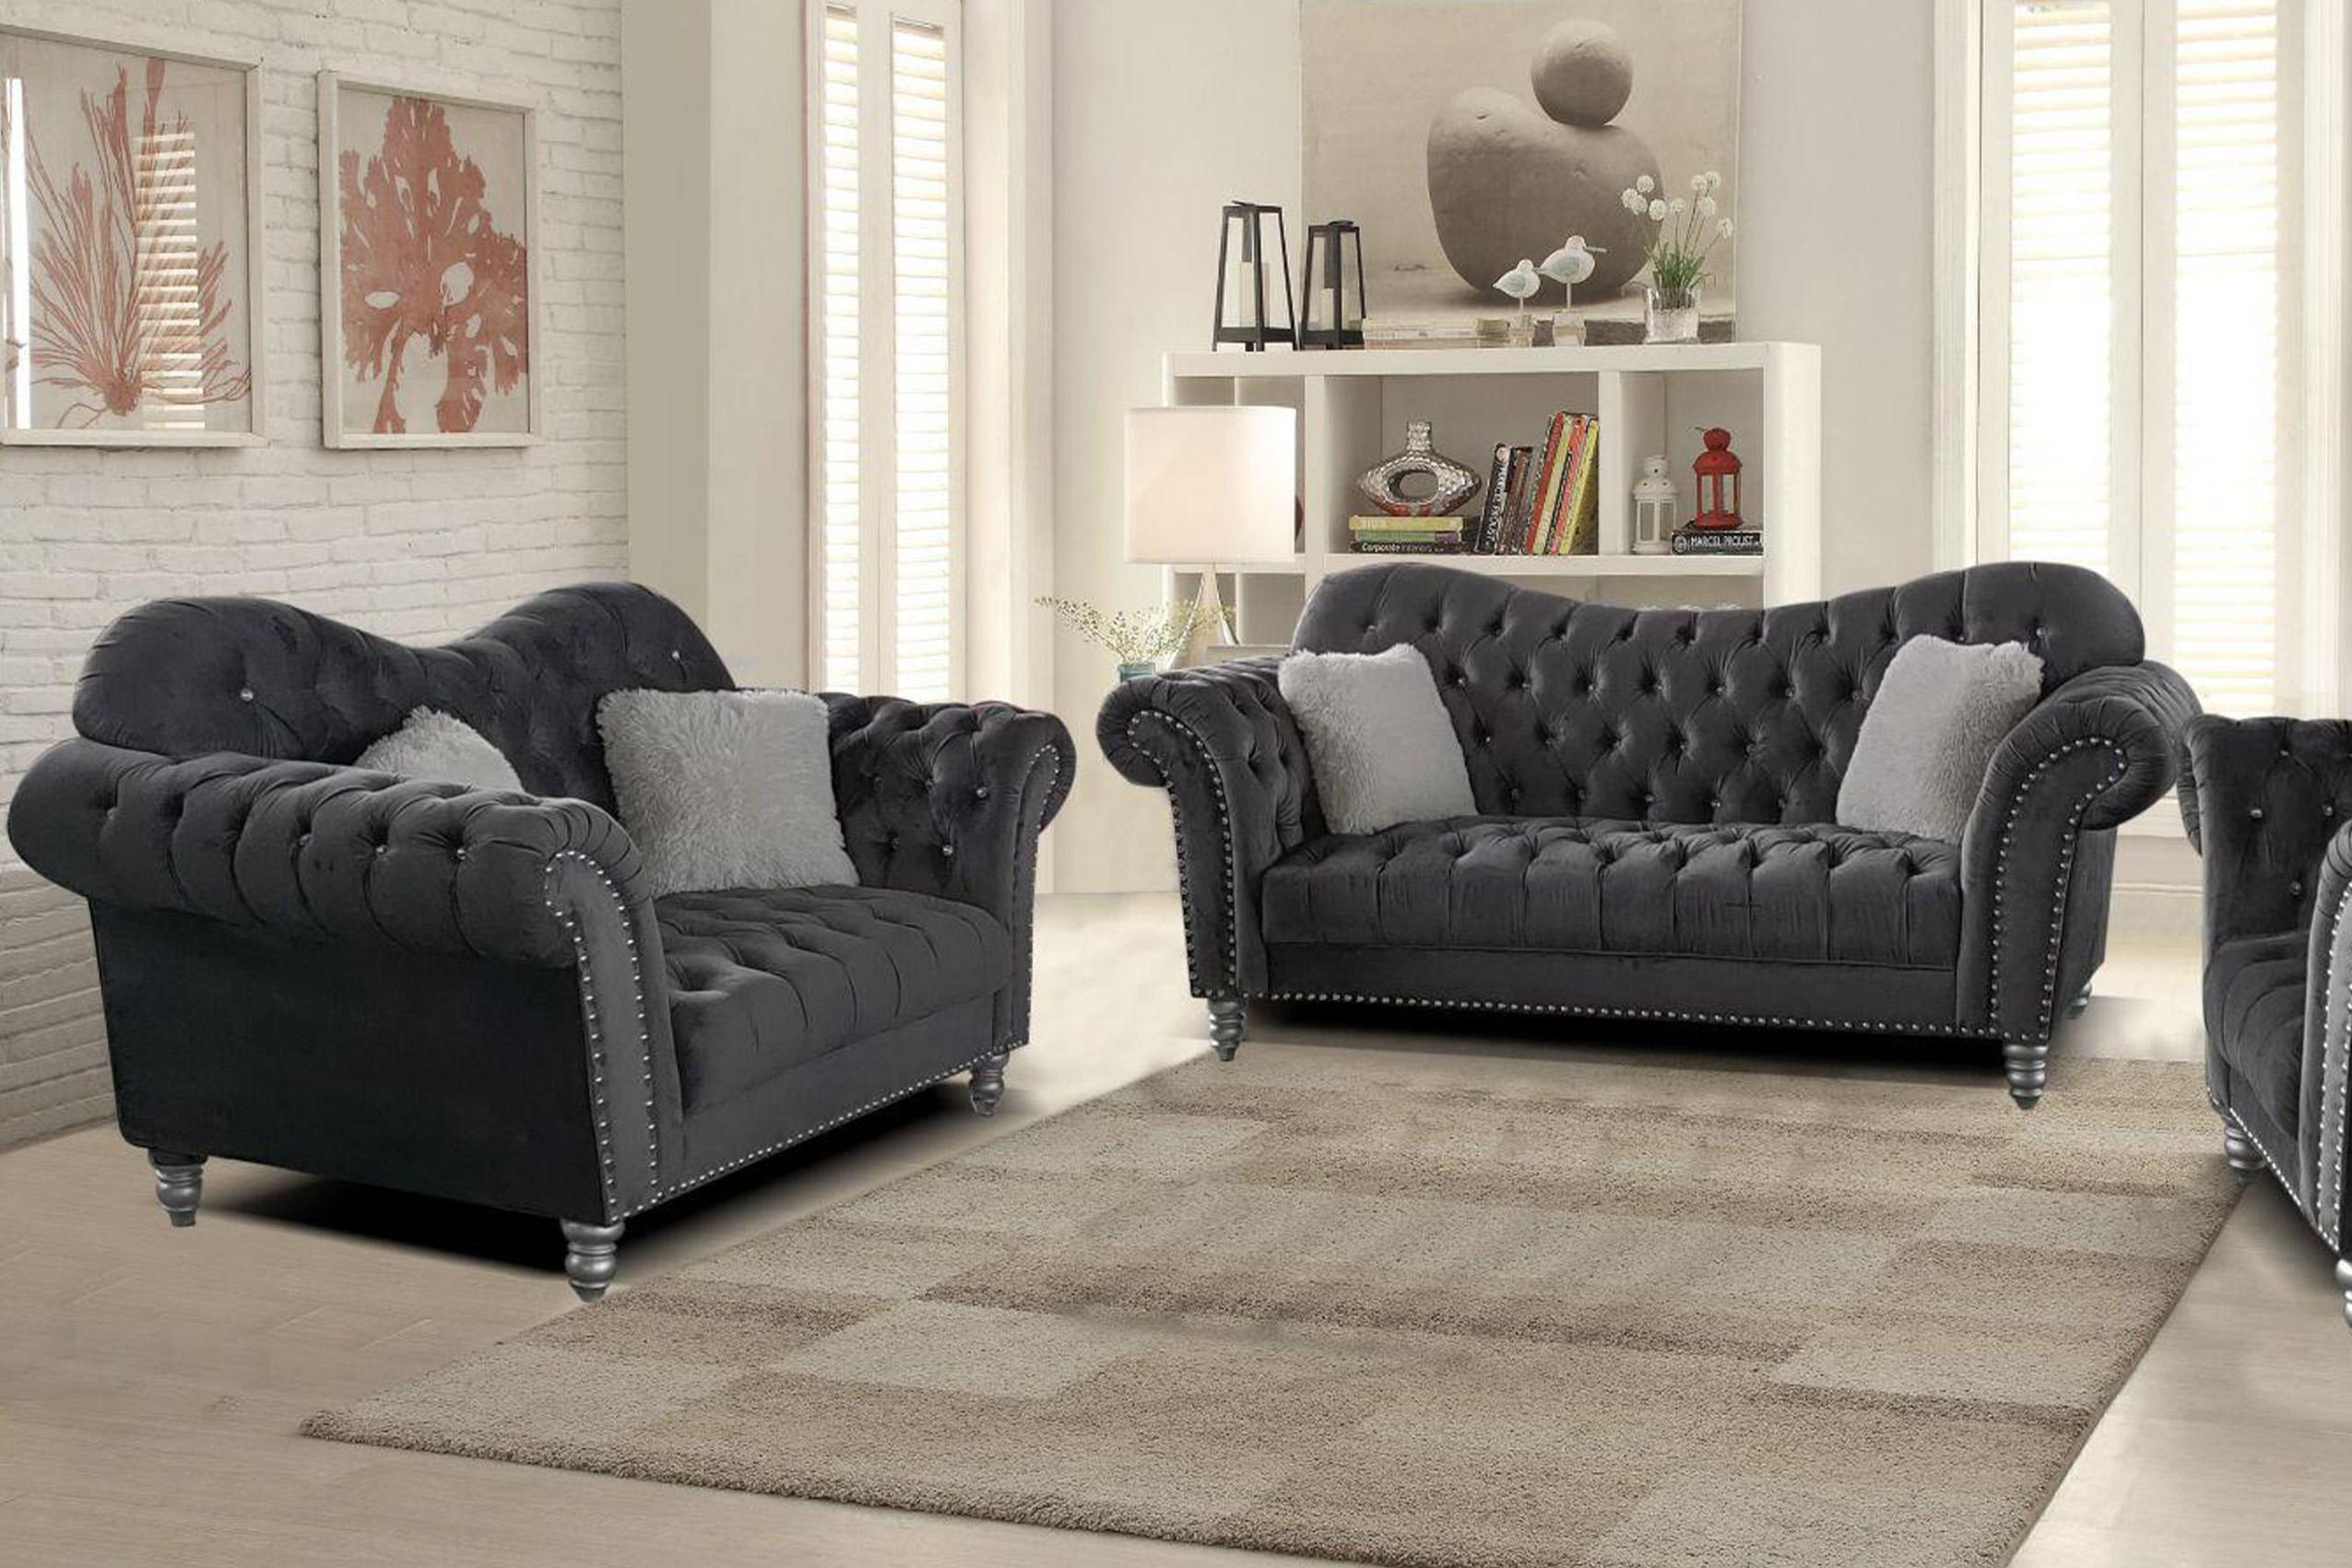 Contemporary, Modern Sofa Set JESSICA JESSICA-S-L in Gray Fabric